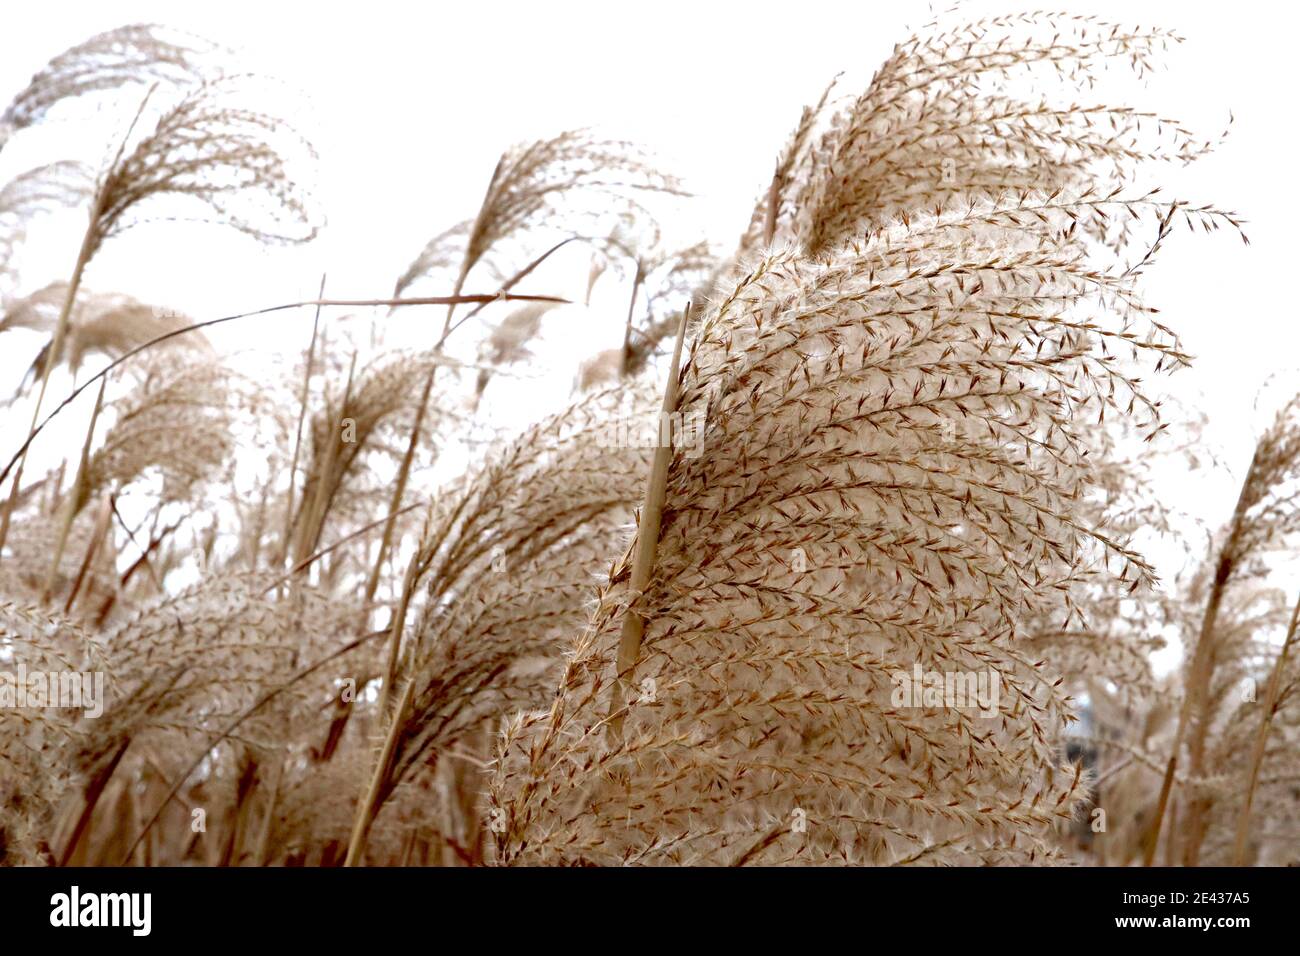 Miscanthus sinensis ‘Silberfeder’ l’erba d’argento cinese – plume piume di fiori di palma setosi, gennaio, Inghilterra, Regno Unito Foto Stock